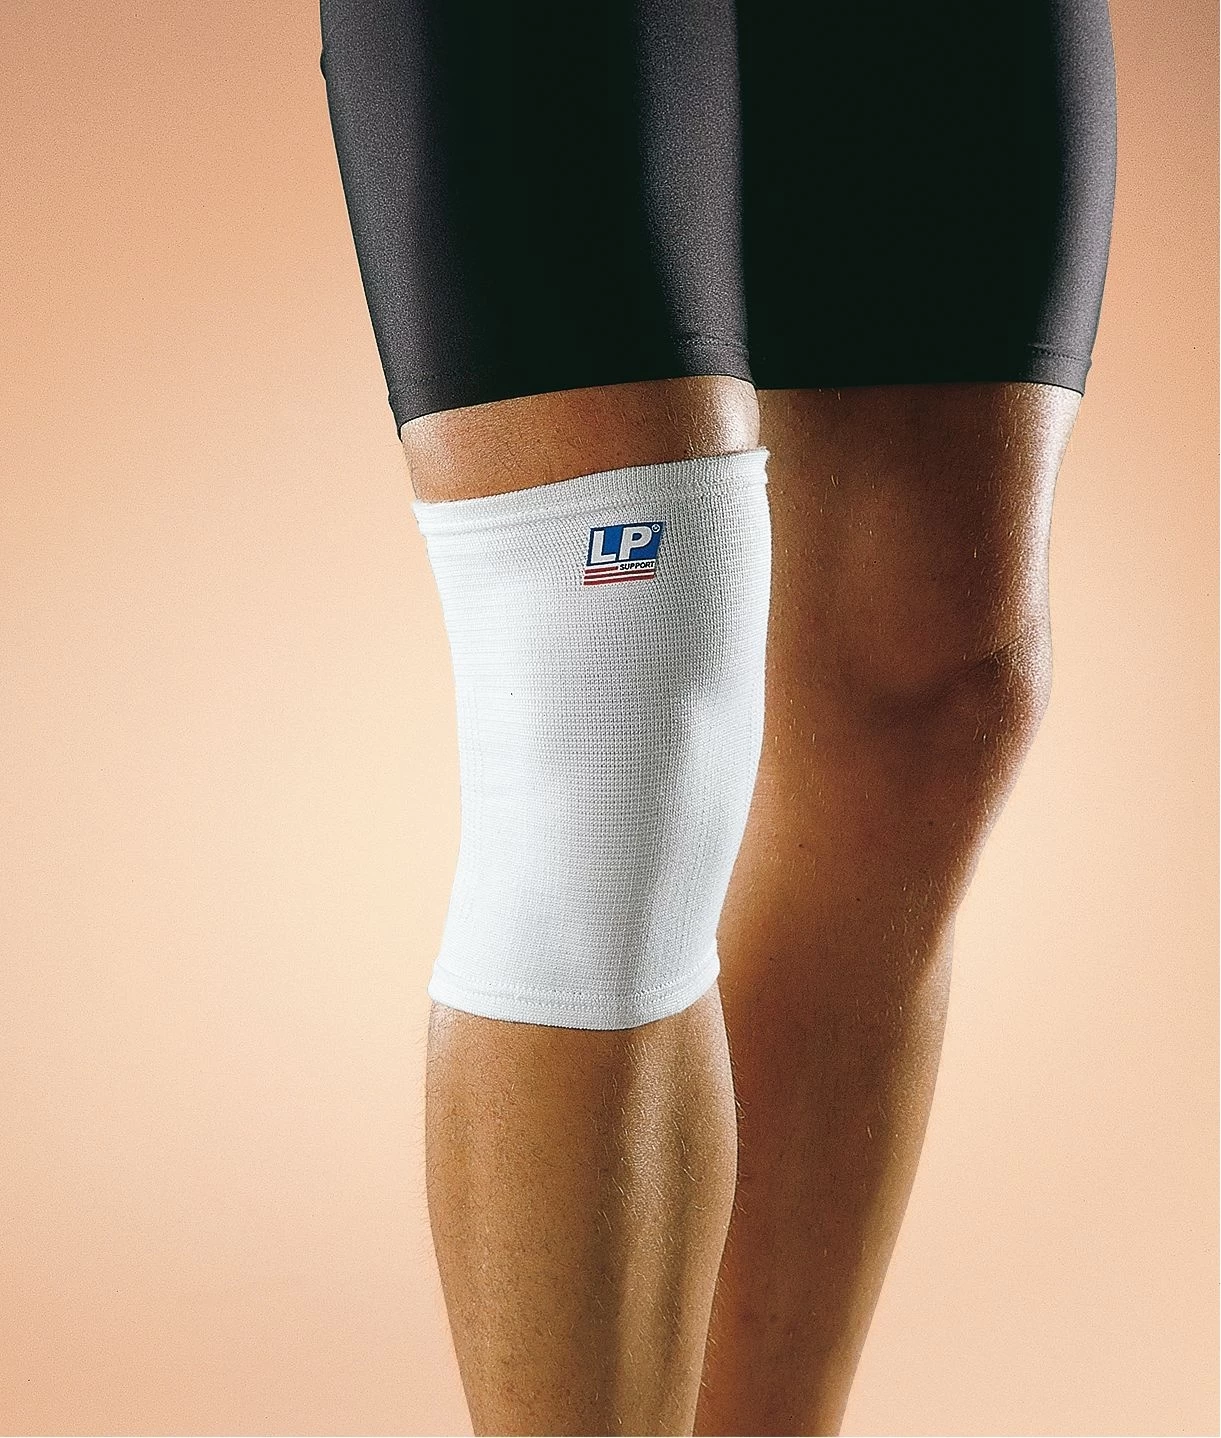 Lp 601 ortoza steznik koleno XL